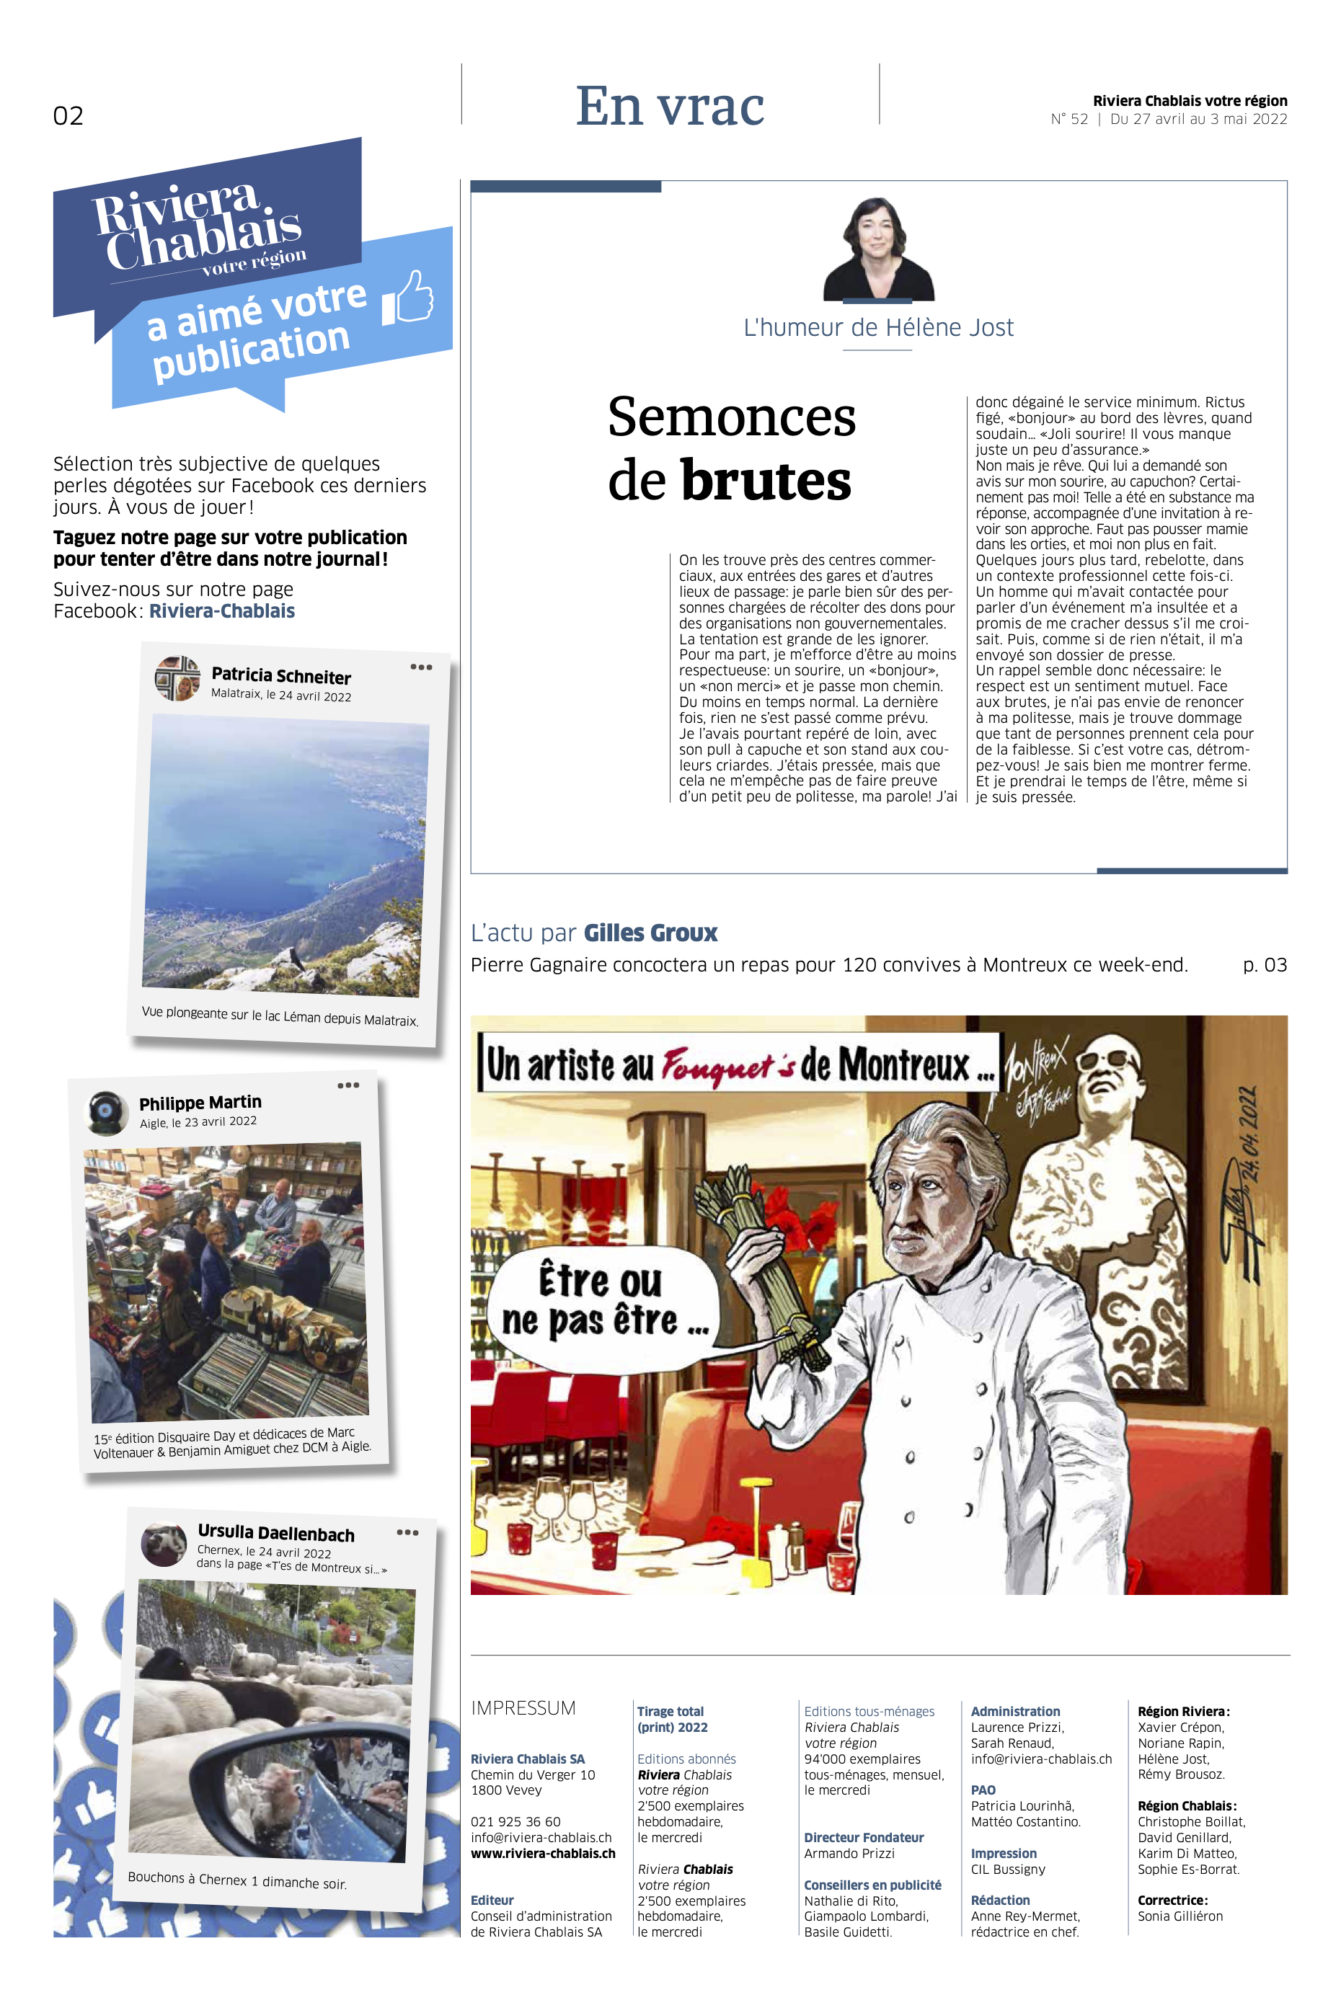 Journal Riviera n° 52 ©Dessin de Gilles,, du Chef Gagnaire dans le restaurant Fouquet's de Montreux pour article Dans un plat, on doit retrouver la tendresse du cuisinier du 27 avril 2022 page 2